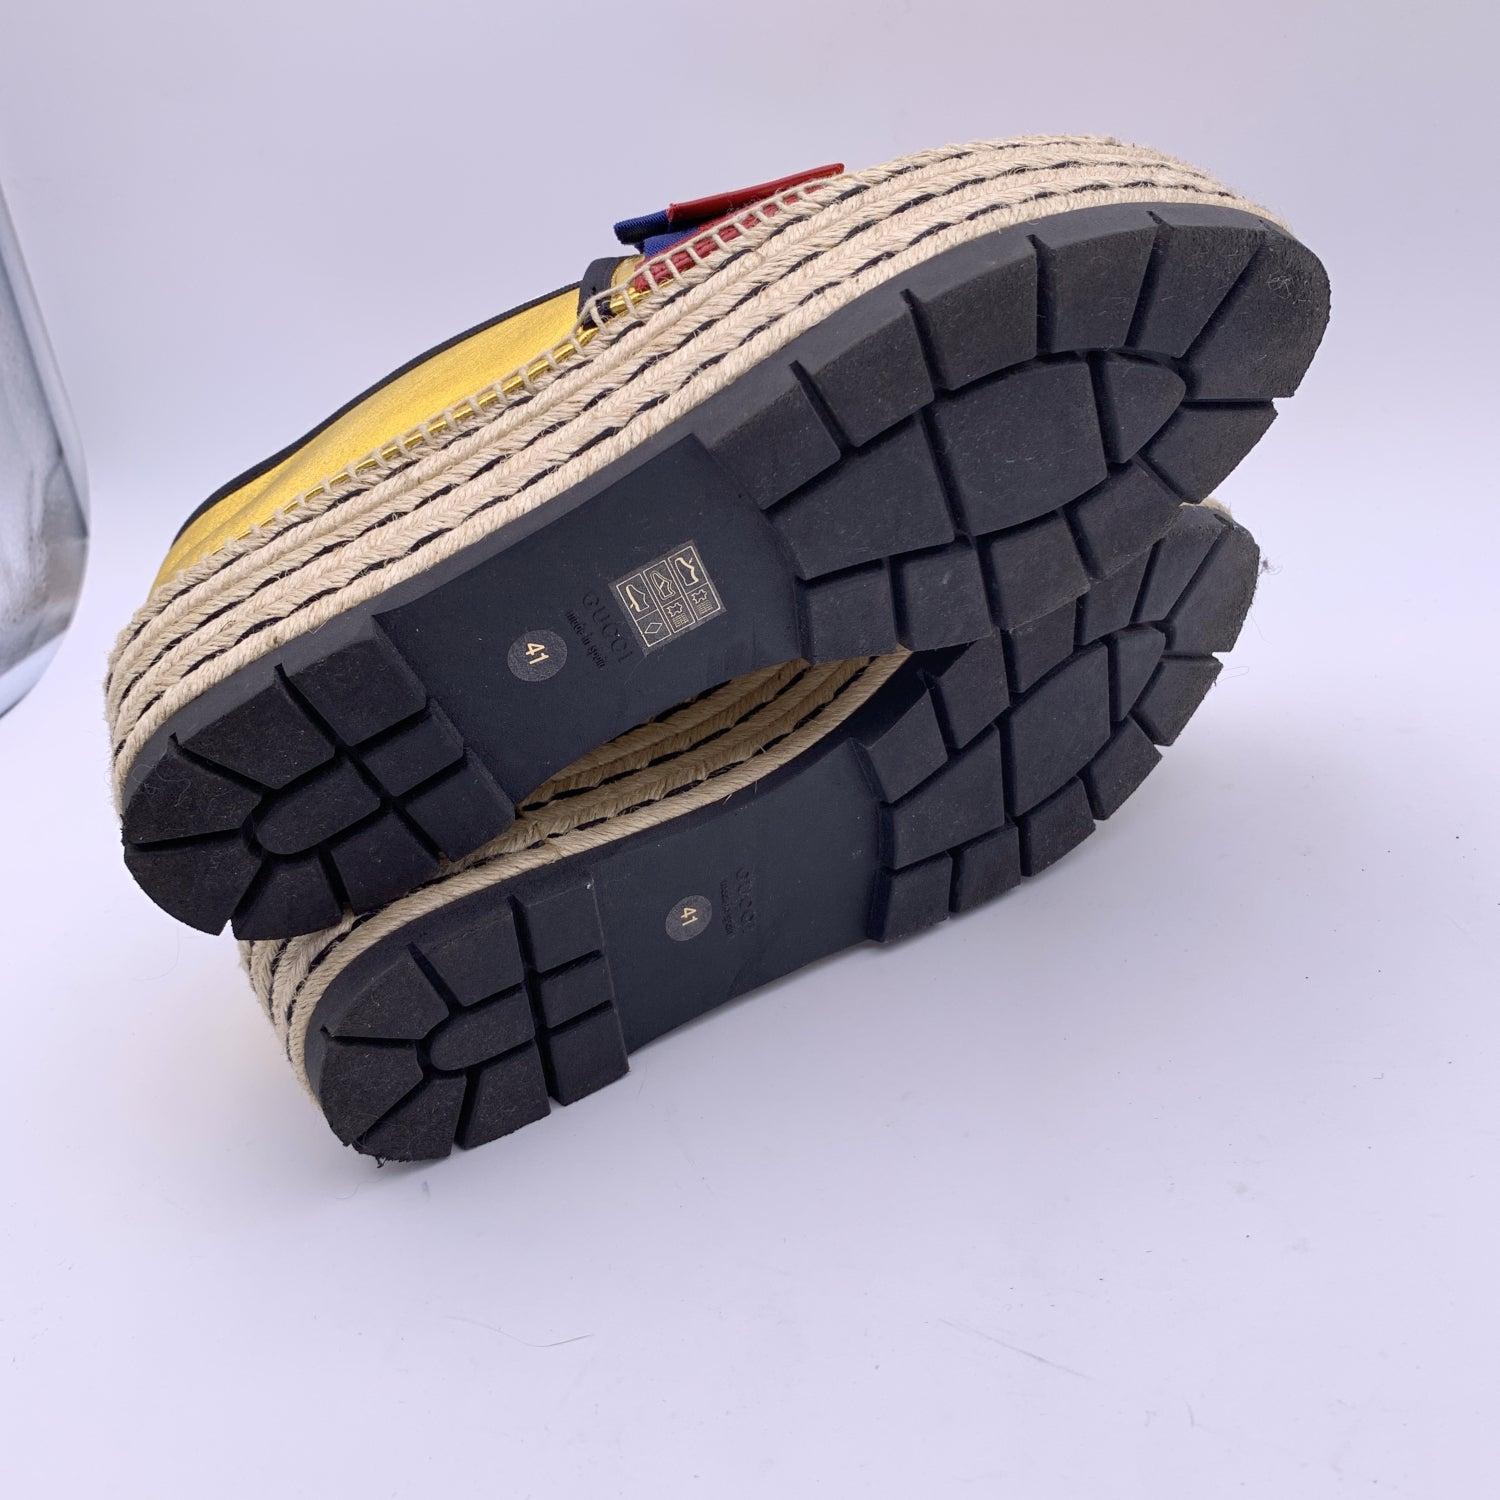 Gucci Gold Leather Sylvie Web Bow Espadrilles Platform Shoes Size 41 For Sale 1